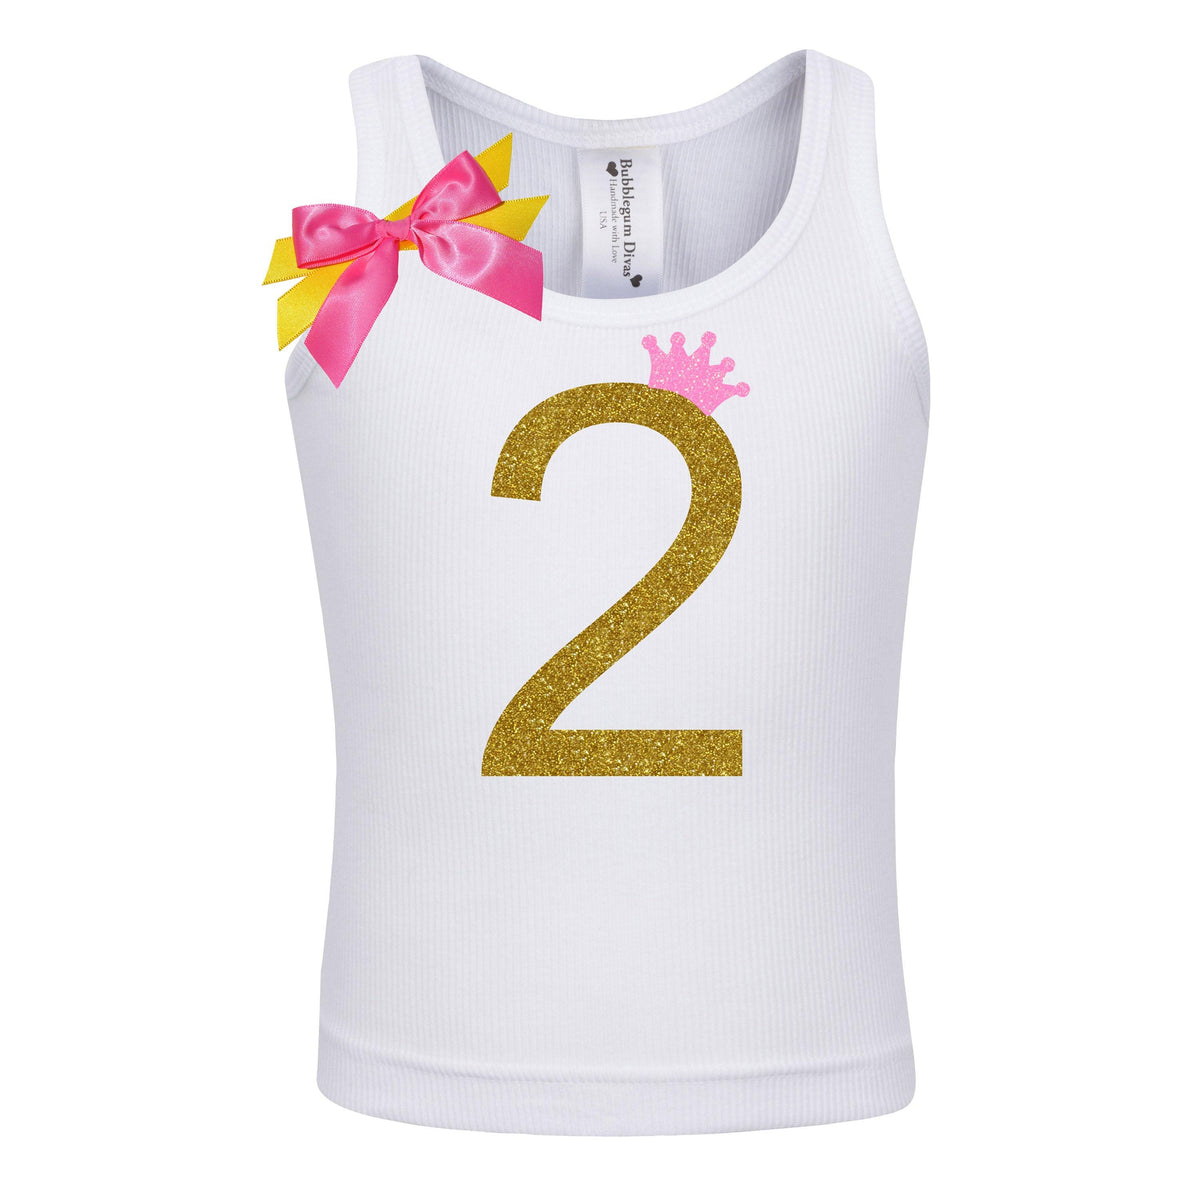 Toddler Girls 2nd Birthday Shirt - Gold Glitter with Neon Pink Crown - Bubblegum Divas 